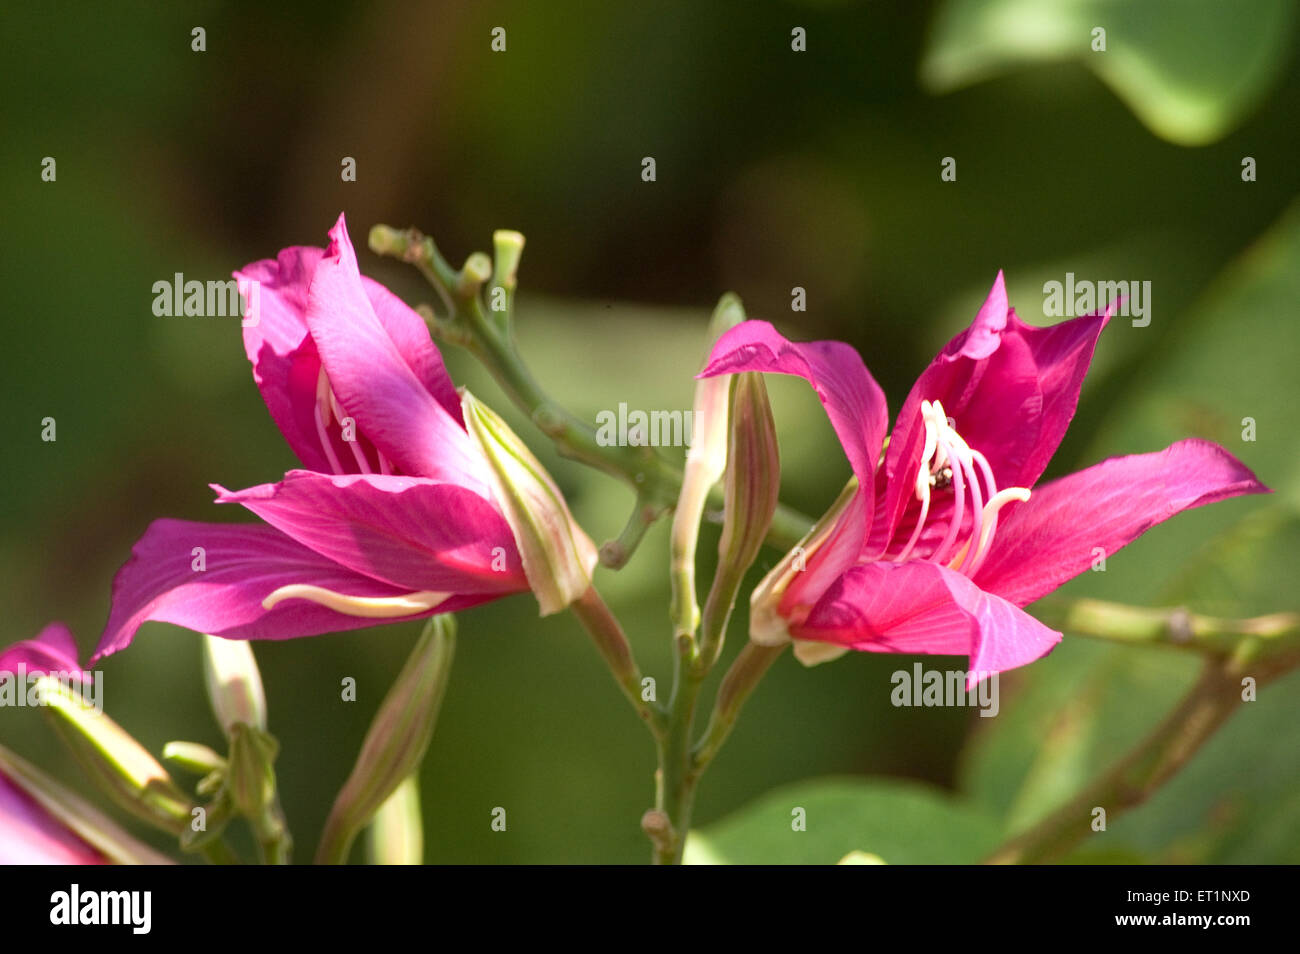 Kanchan flower, Kanchanara, Camel's foot, Bauhinia variegata, orchid tree, mountain ebony, Stock Photo